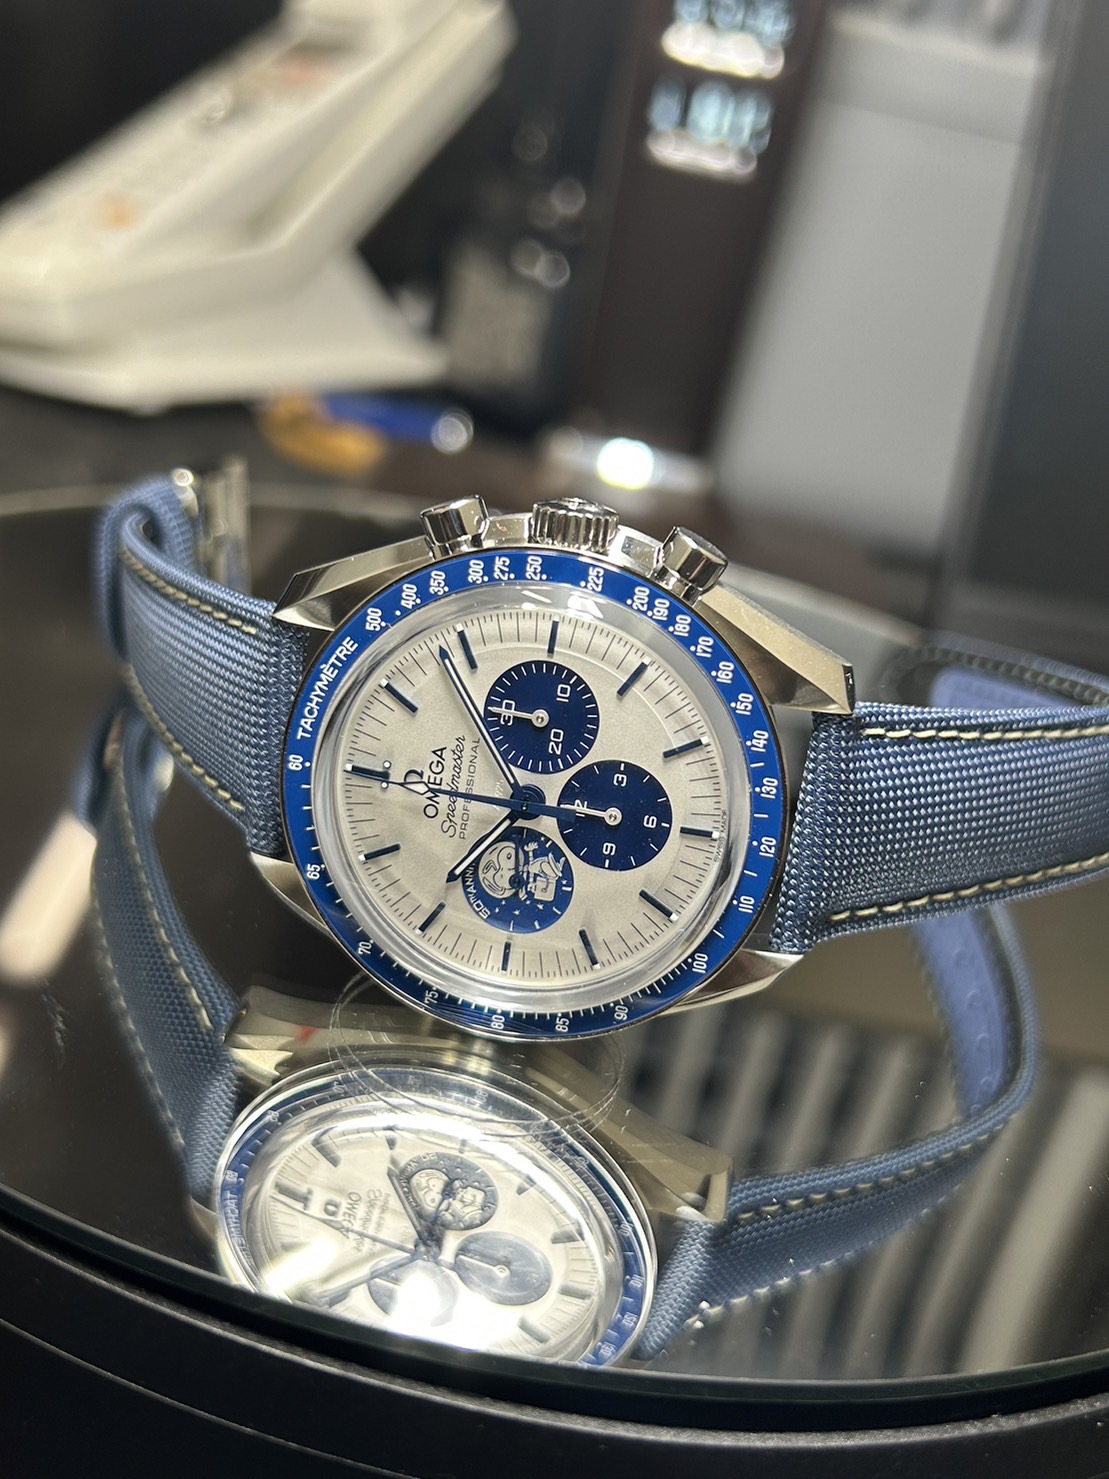 スヌーピーの50周年アニバーサリー限定腕時計 - 時計